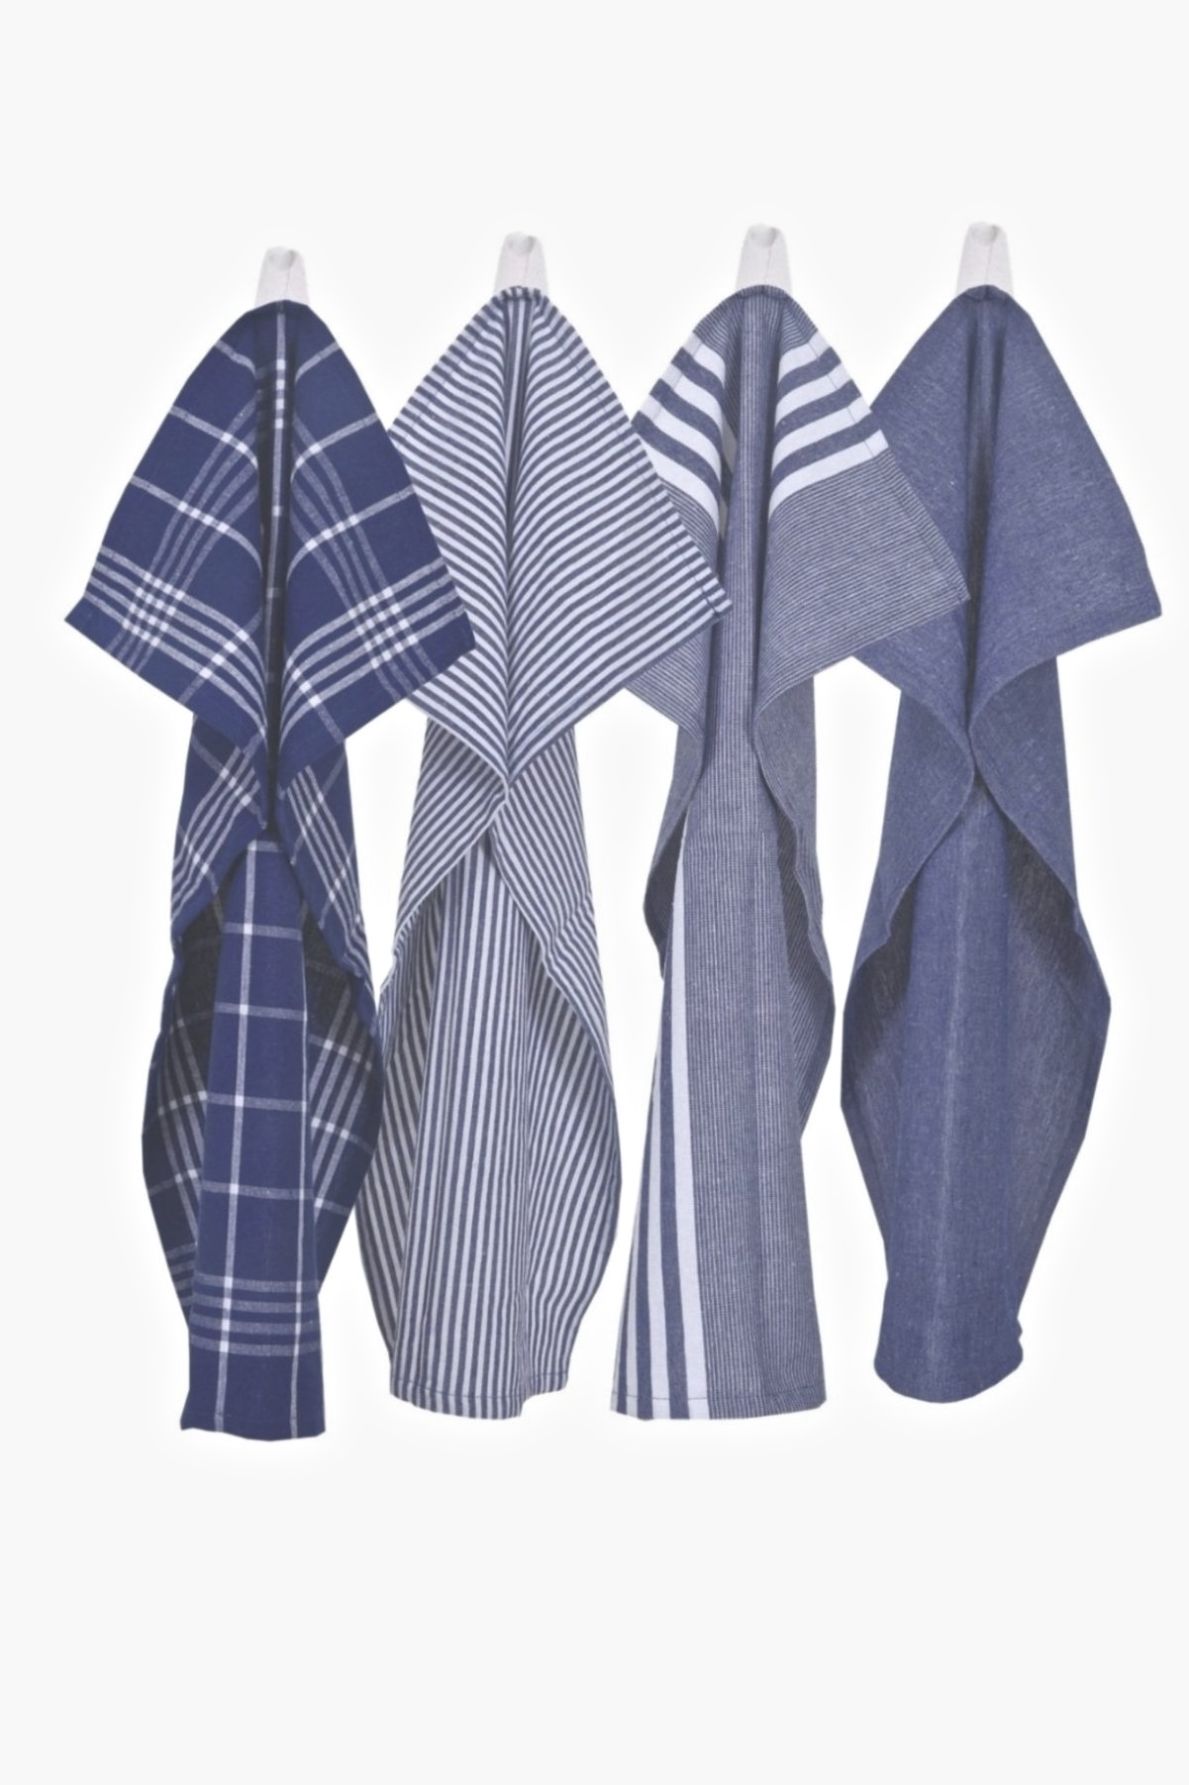 Kökshandduk från Classic textile i återvunna textilier. Färg: Blå och vitrandig.